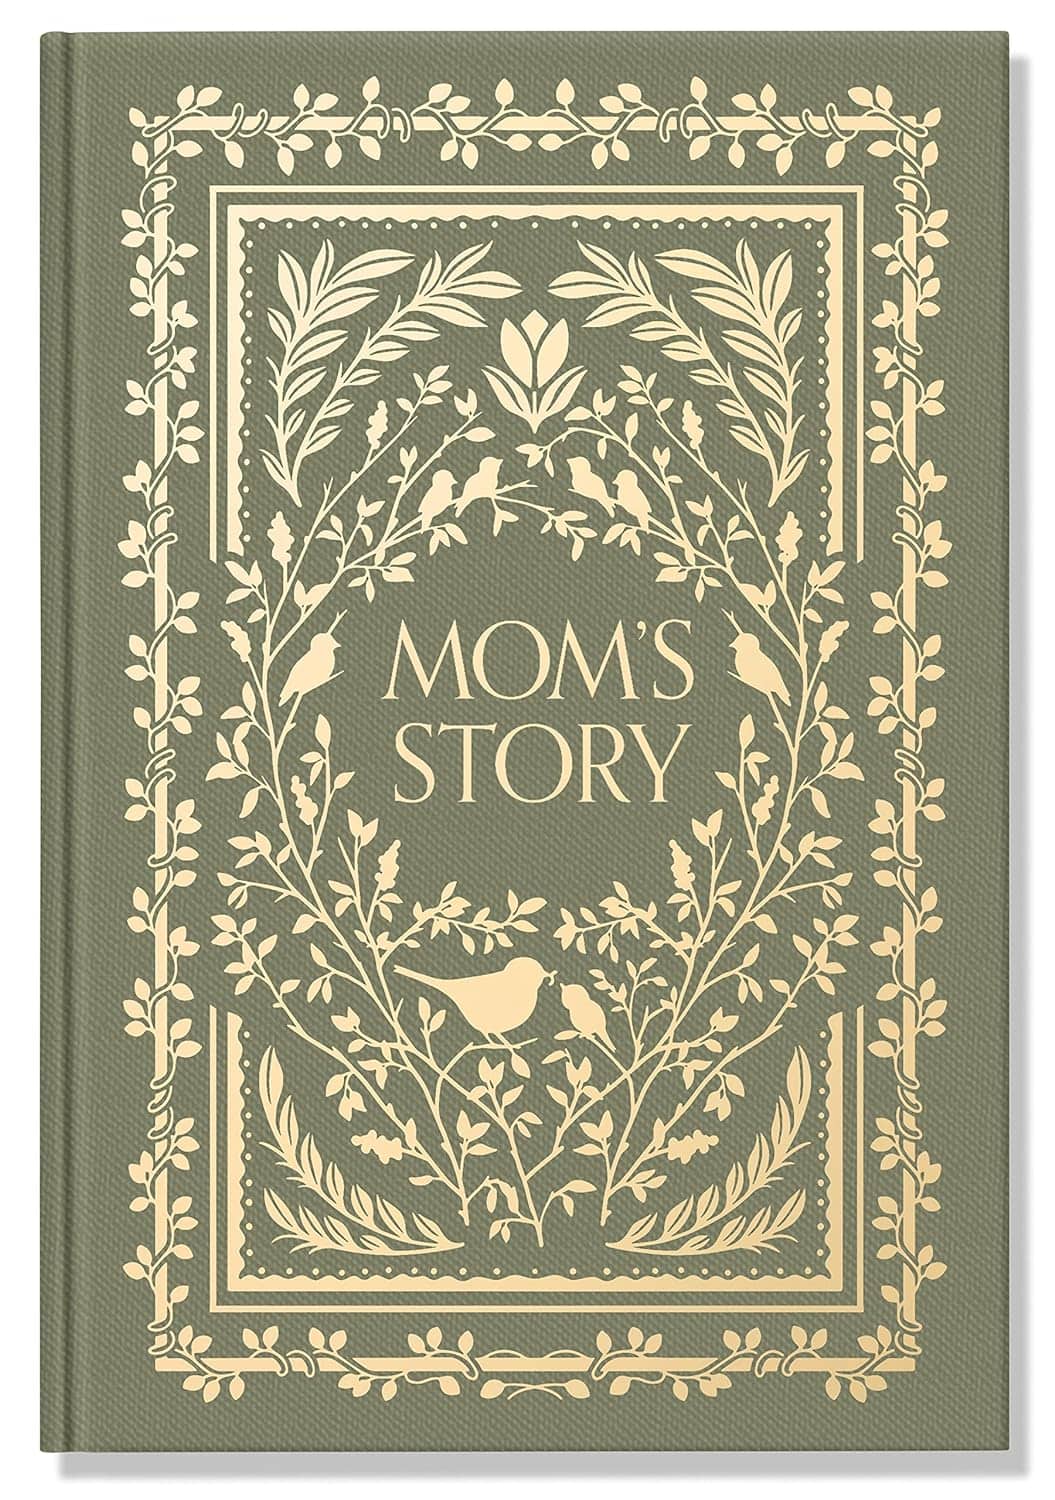 Mom's Story journal for moms